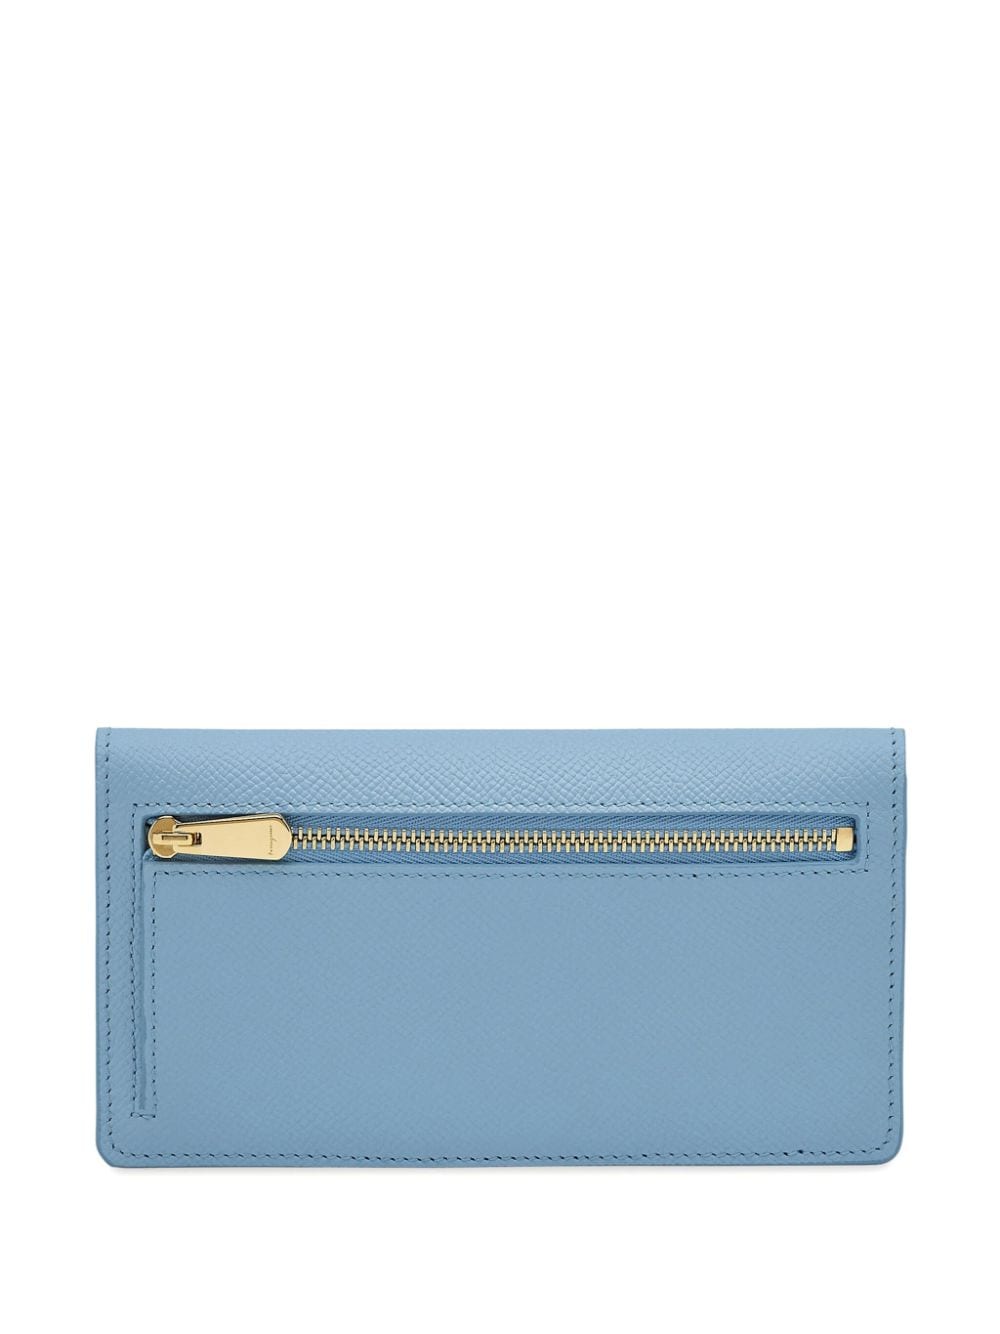 Ferragamo Gancini leather wallet - Blauw